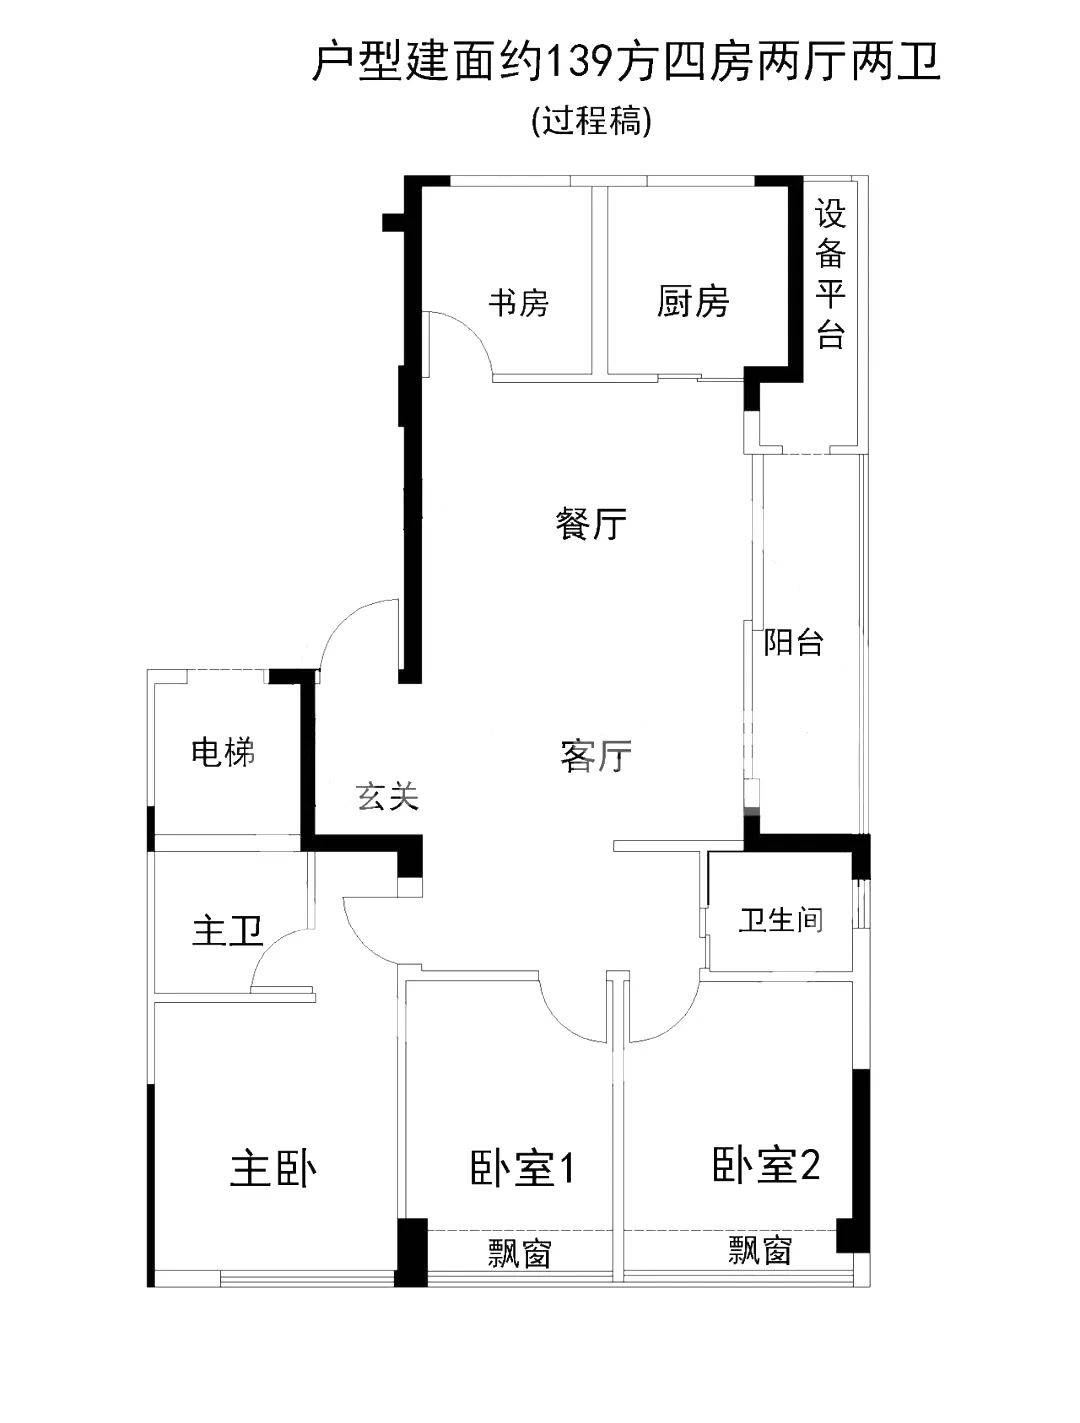 杭州绿城华润晓月映翠139方四房两厅两卫边套